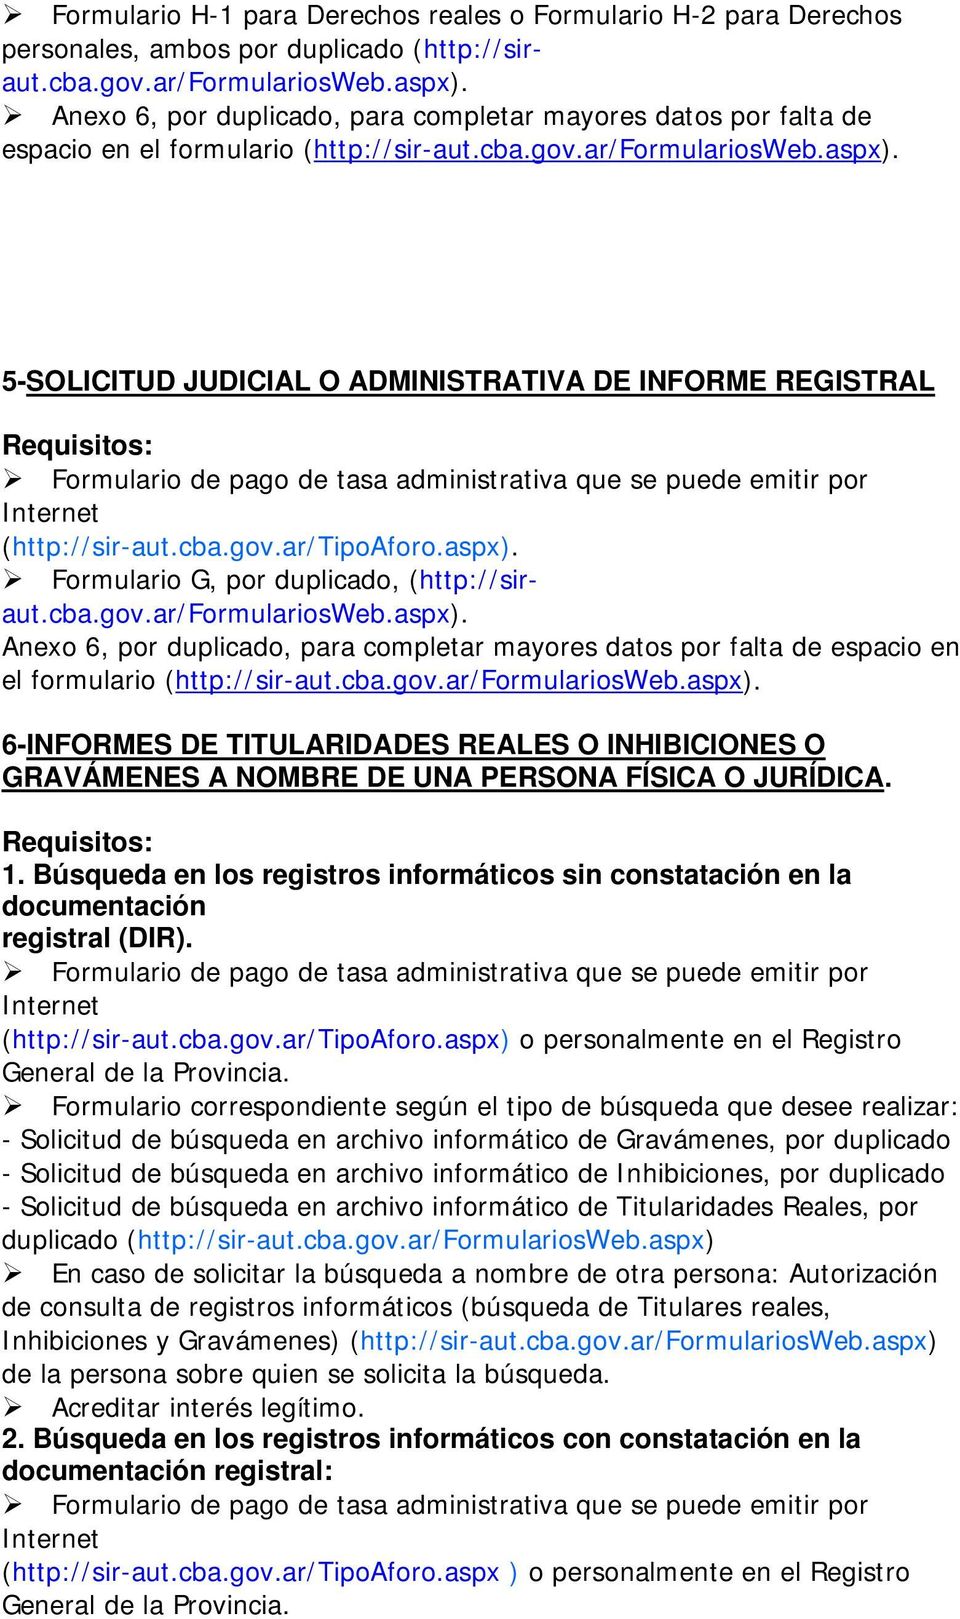 5-SOLICITUD JUDICIAL O ADMINISTRATIVA DE INFORME REGISTRAL (http://sir-aut.cba.gov.ar/tipoaforo.aspx).